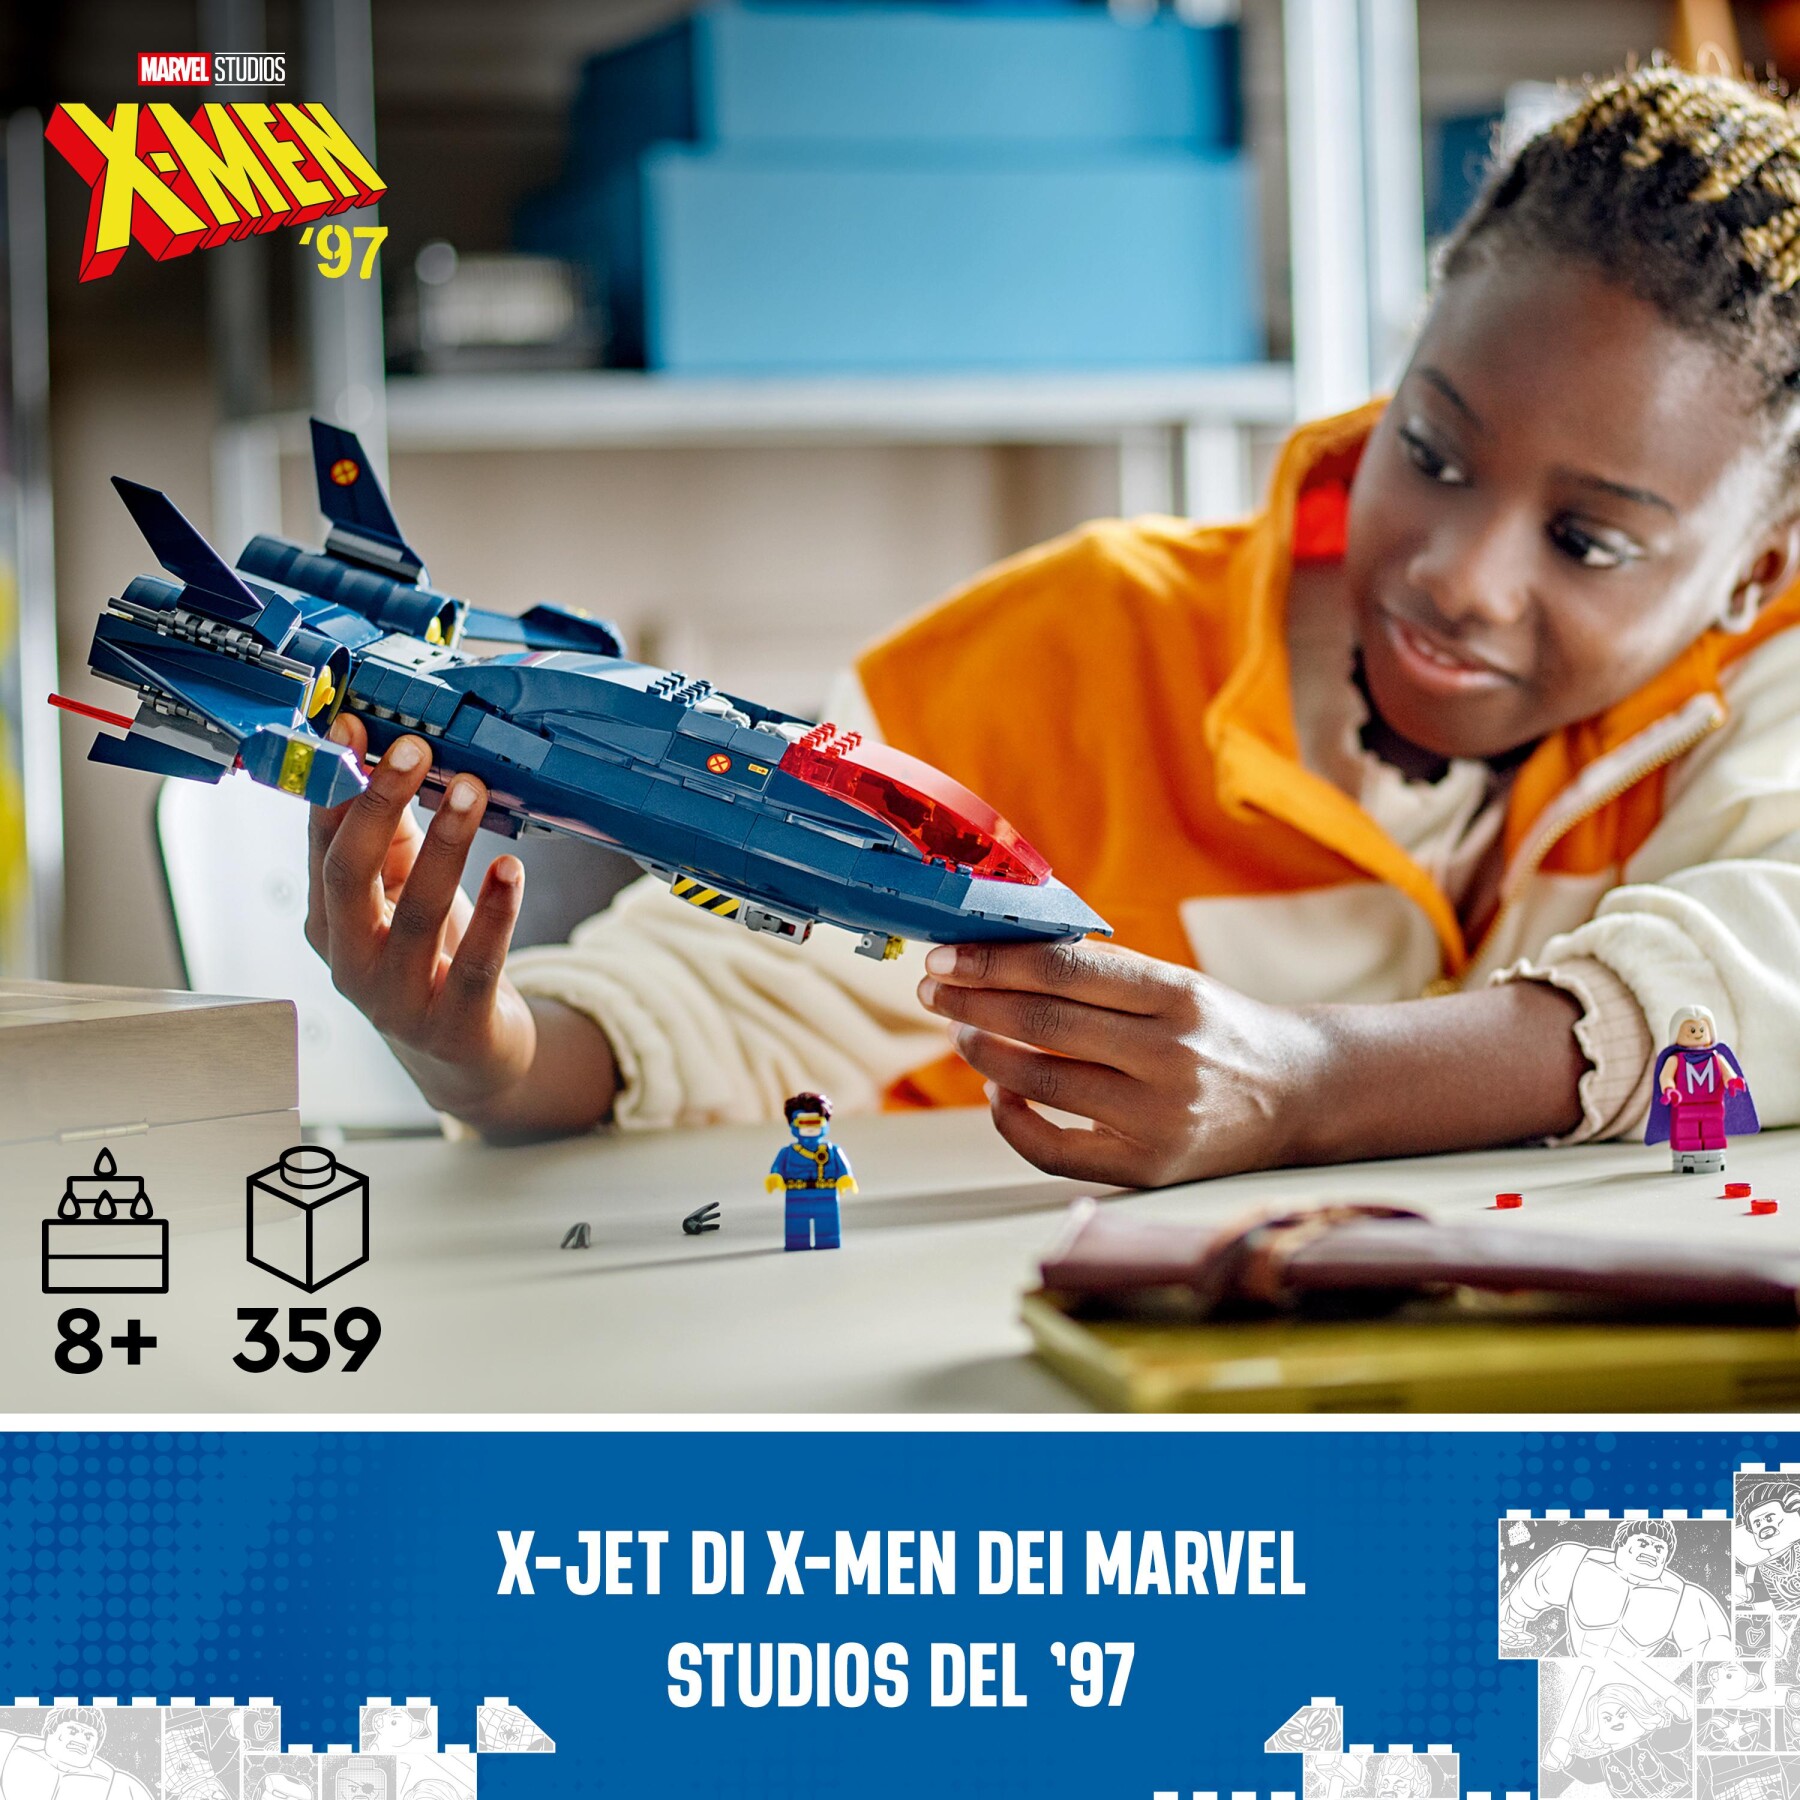 Lego marvel 76281 x-jet di x-men, aereo giocattolo per bambini di 8+ anni, modellino da costruire con minifigure di supereroi - LEGO SUPER HEROES